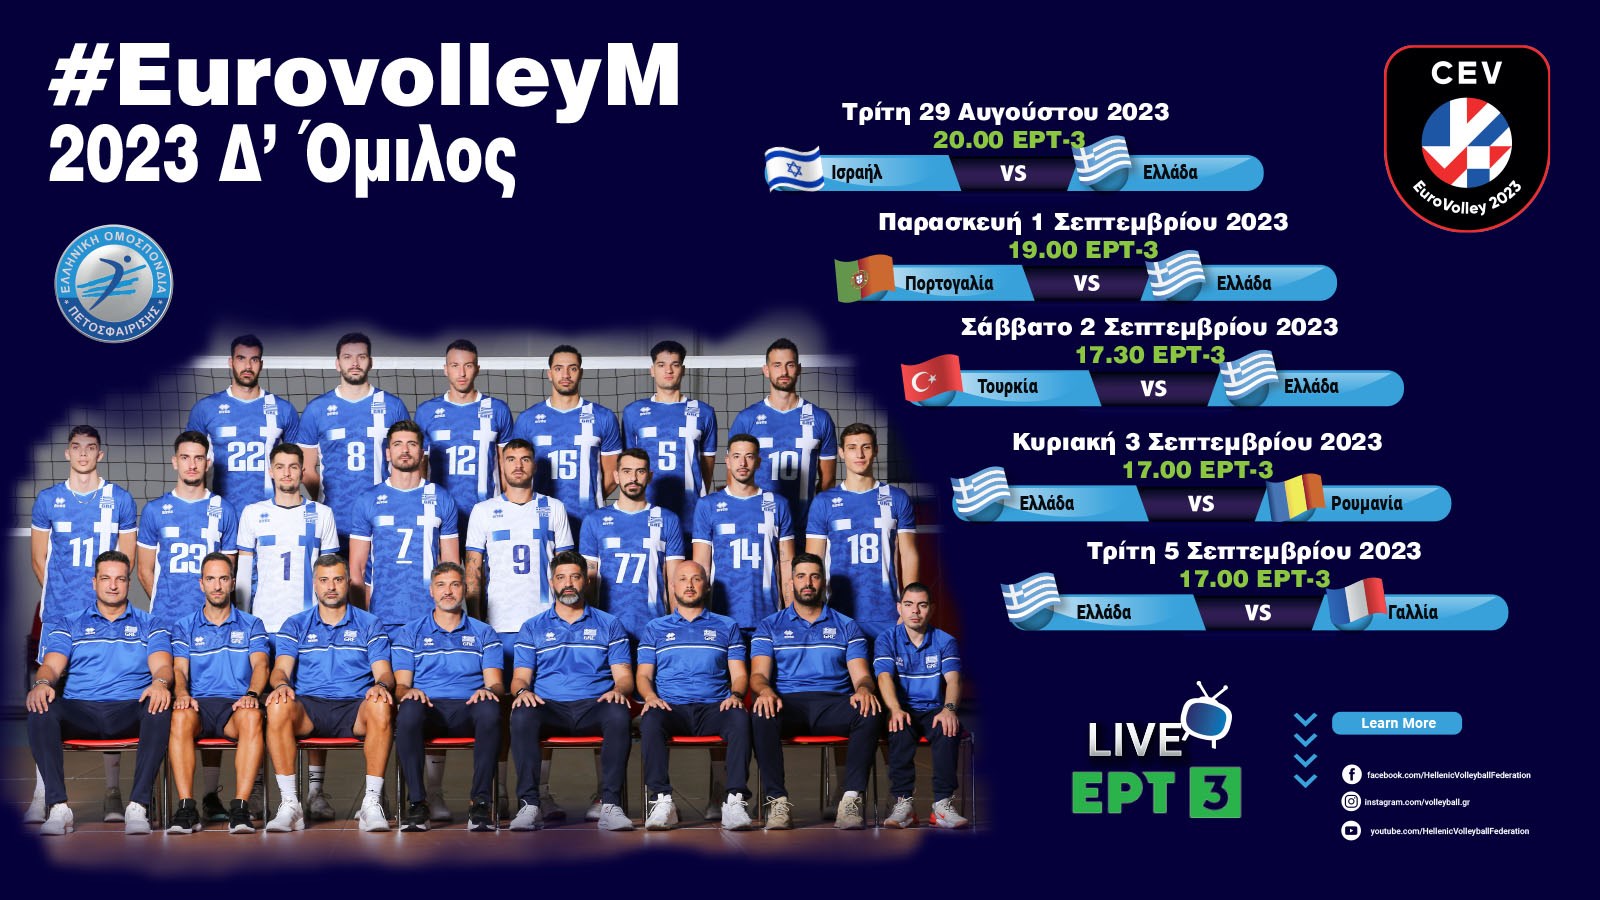 www.volleyball.gr